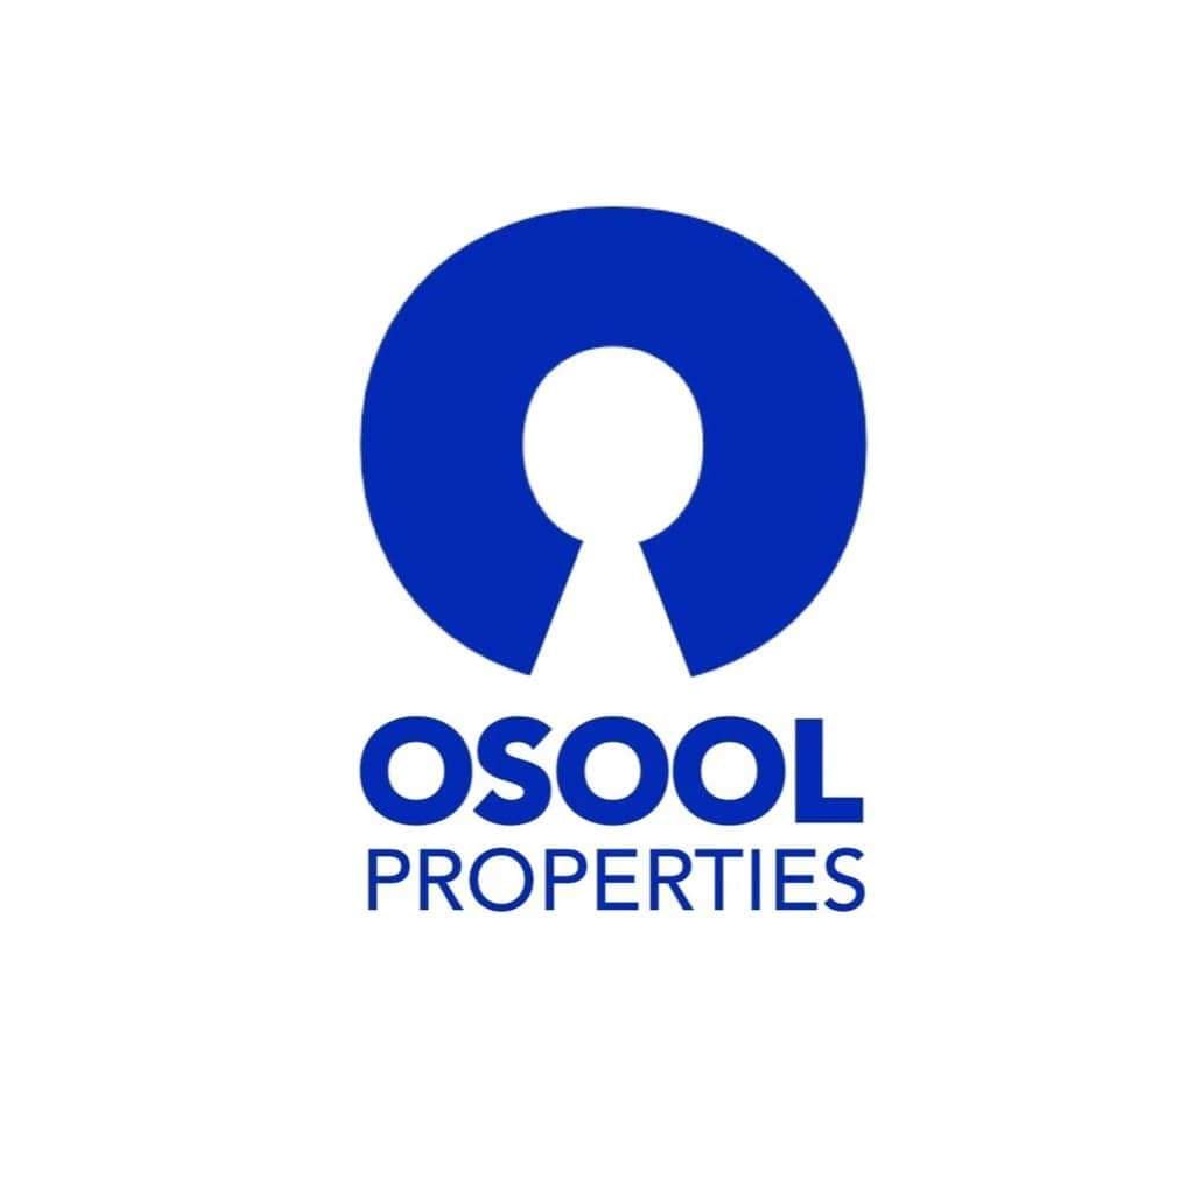 Osool Properties